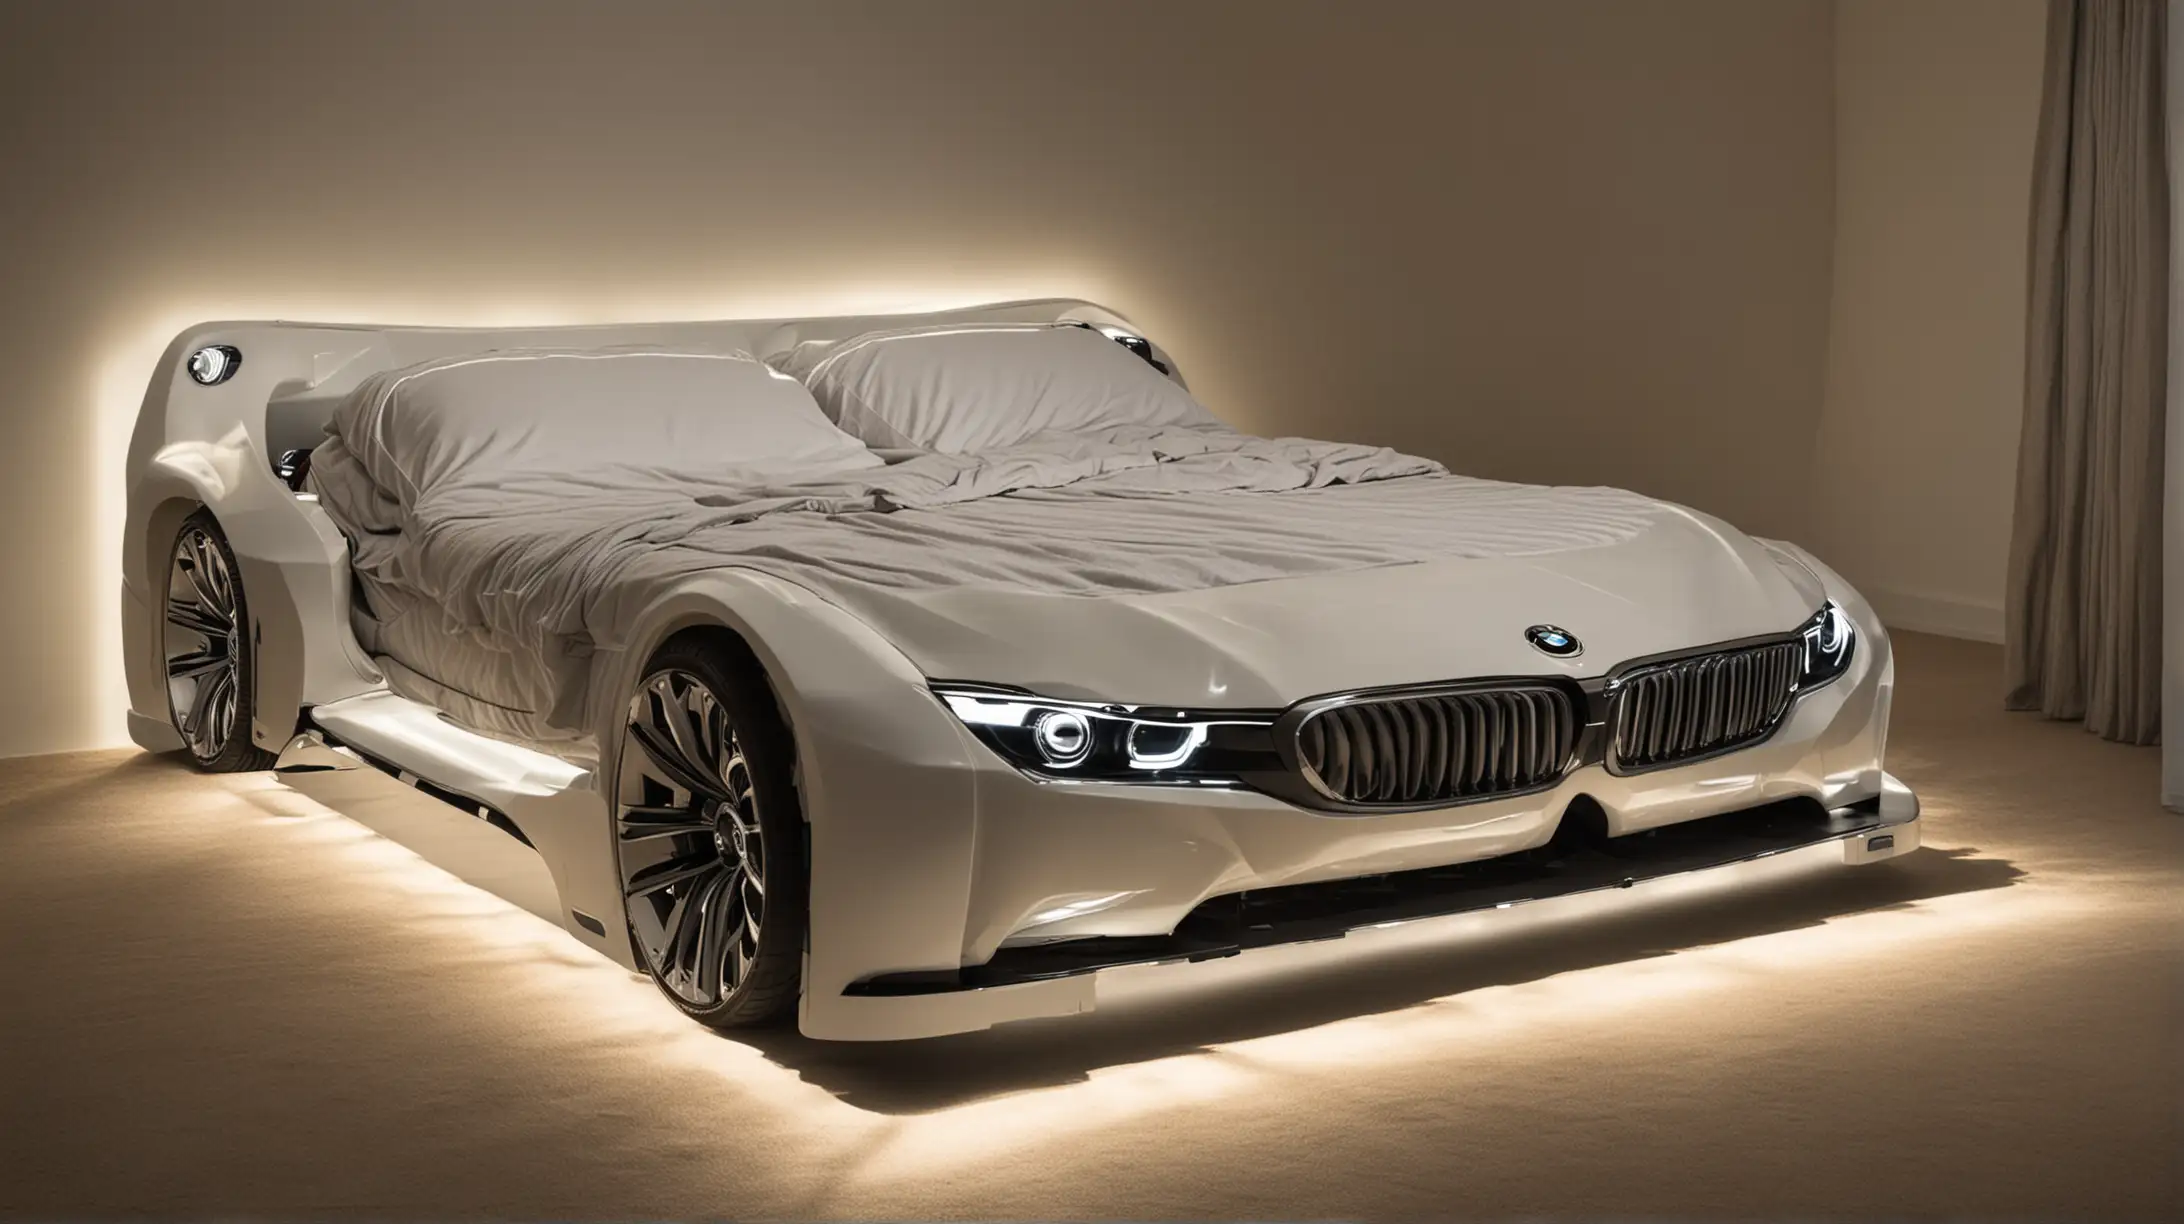 Двухспальная кровать в форме автомобиля марки БМВ с включенными фарами